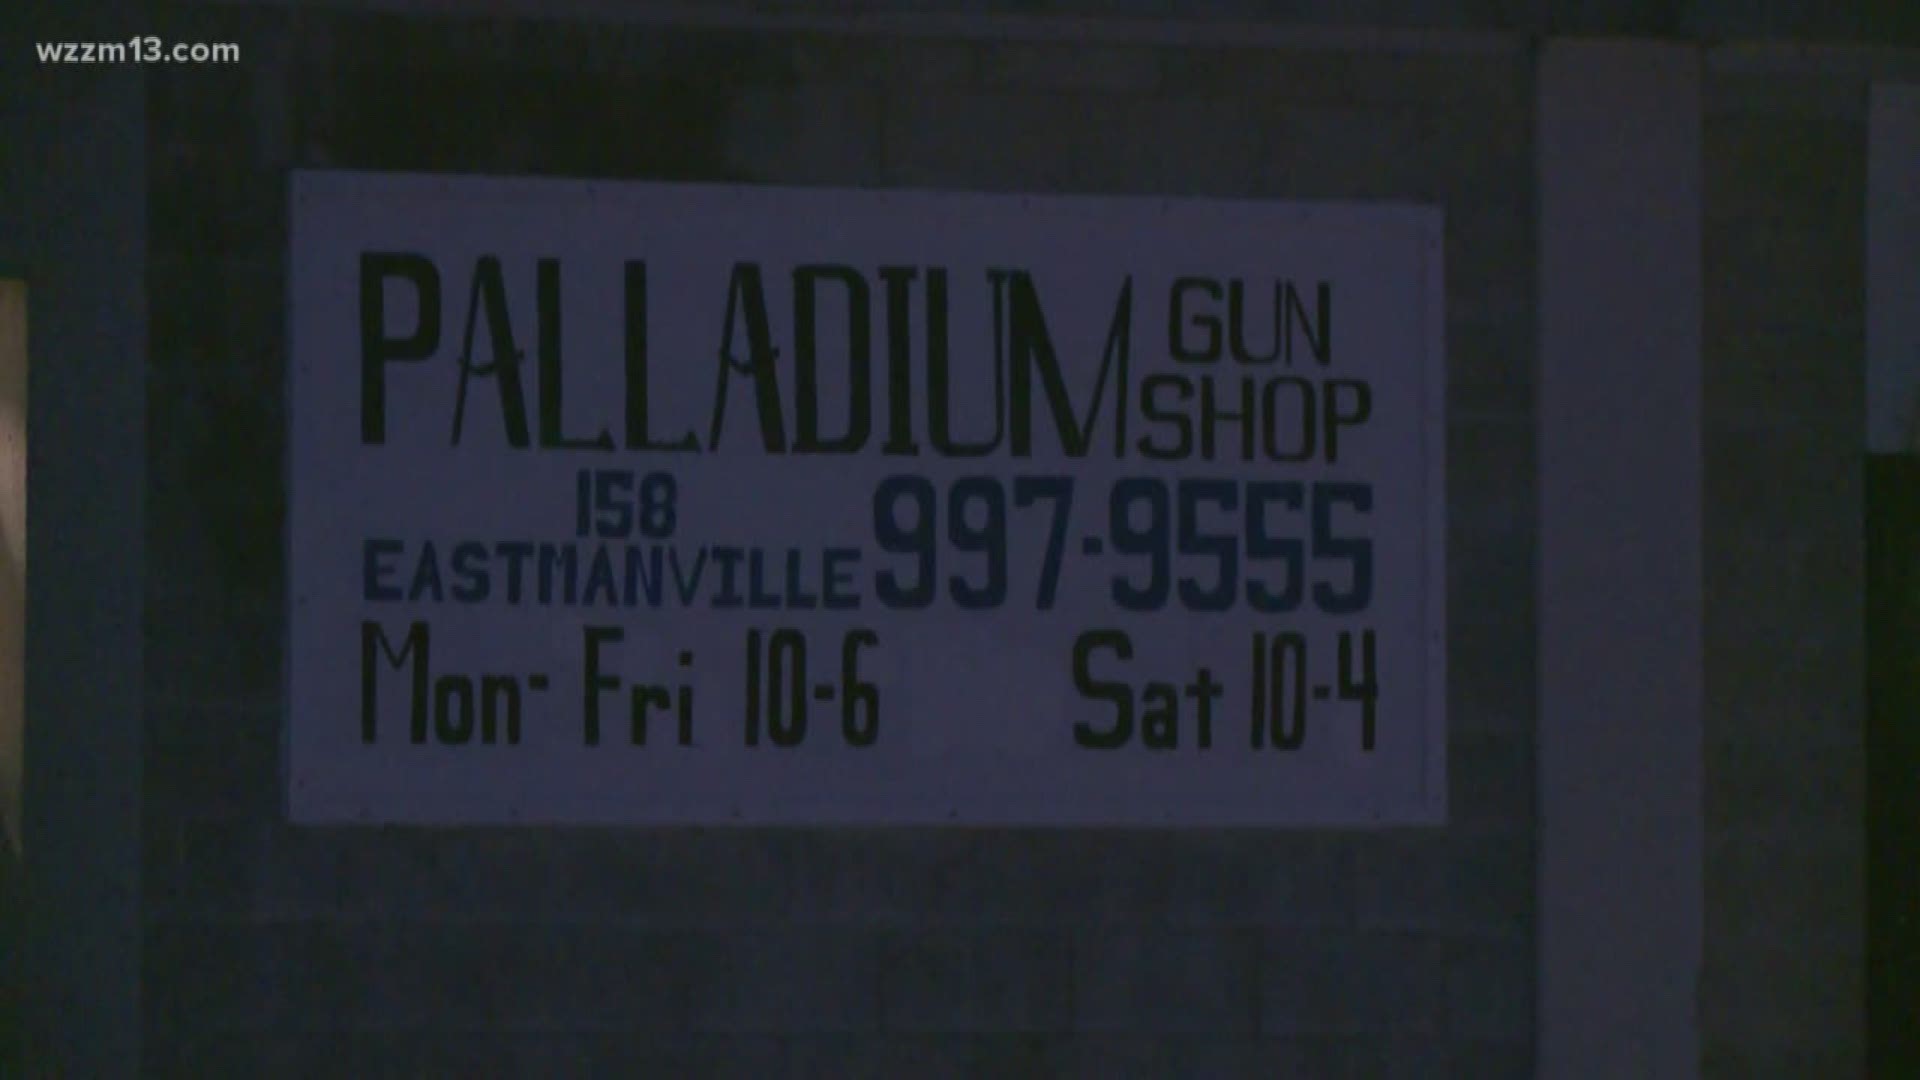 The Palladium Gun Shop in Coopersville was broken into earlier this week and 10 guns were stolen.